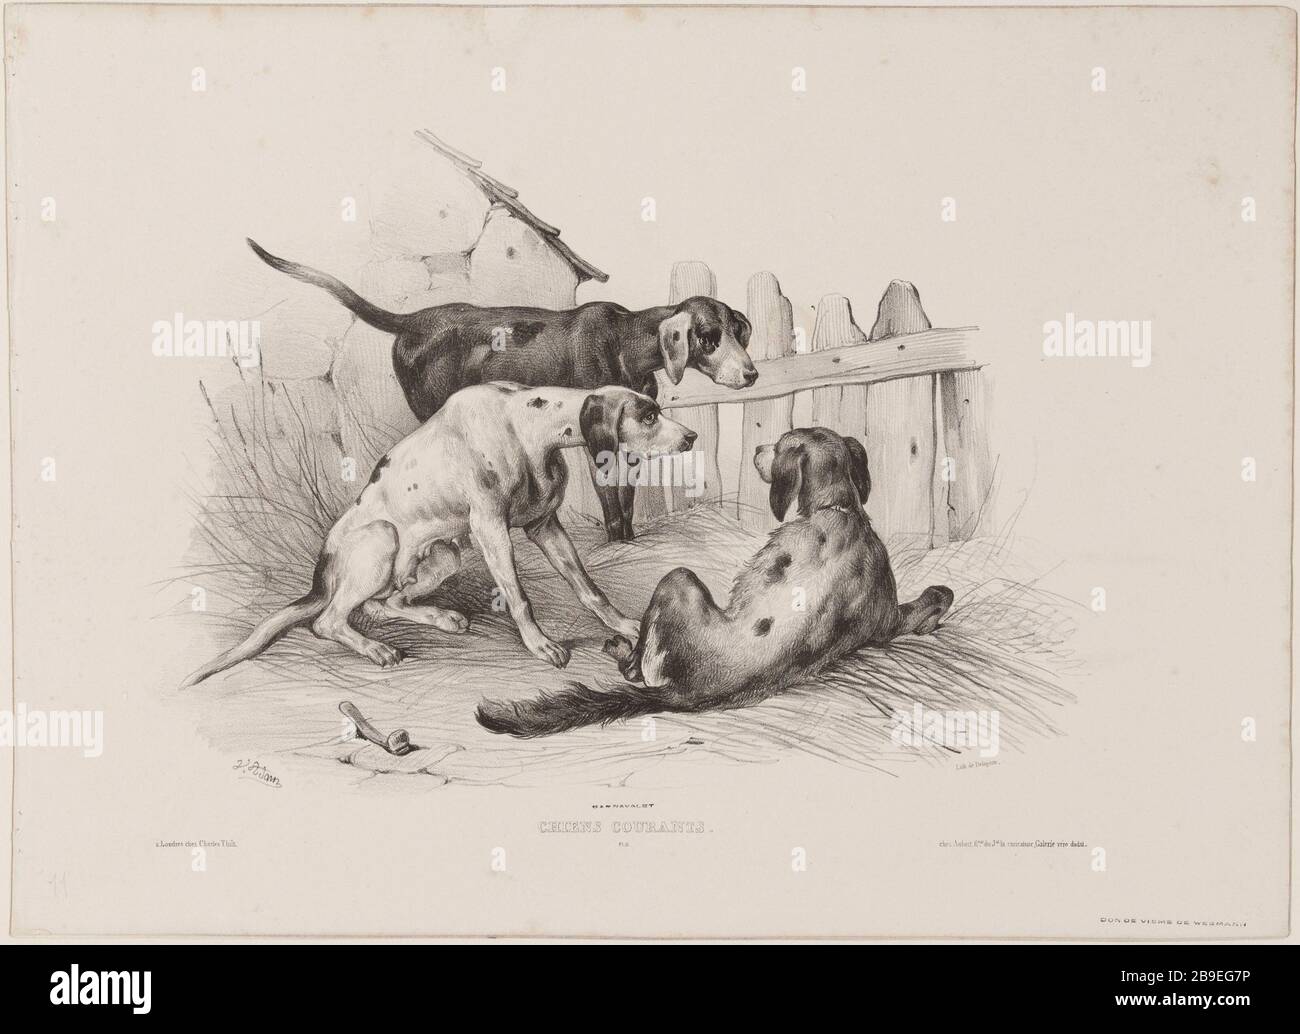 Dogs currents (pl.11) Jean-Victor Vincent Adam (1801-1866), peintre et lithographe français. Chiens courants (pl.11). Lithographie au crayon, XIXème siècle. Paris, musée Carnavalet. Stock Photo